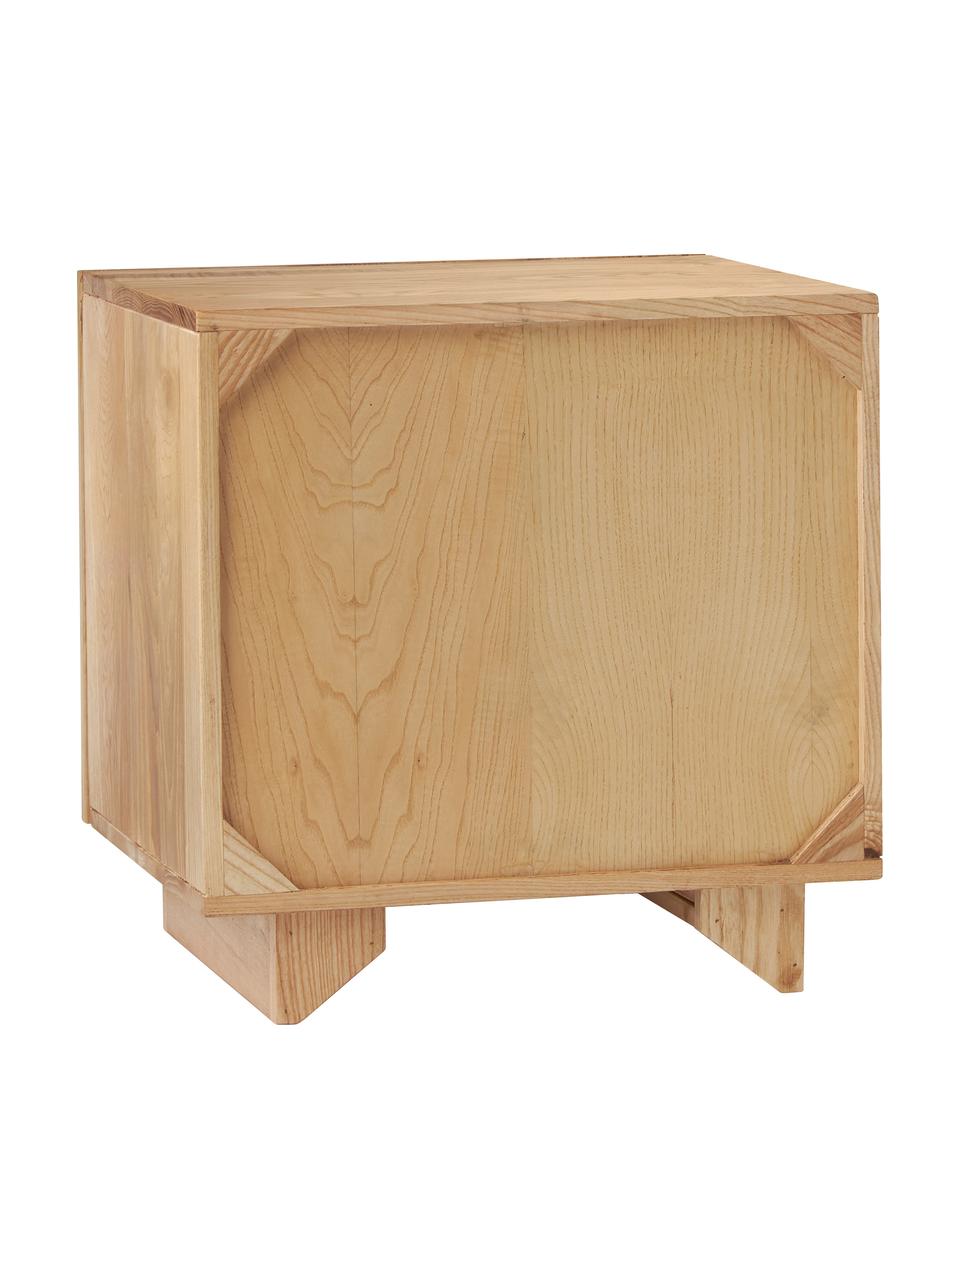 Nachttisch Louis, Massives Eschenholz, lackiert, Holz, B 40 x H 50 cm